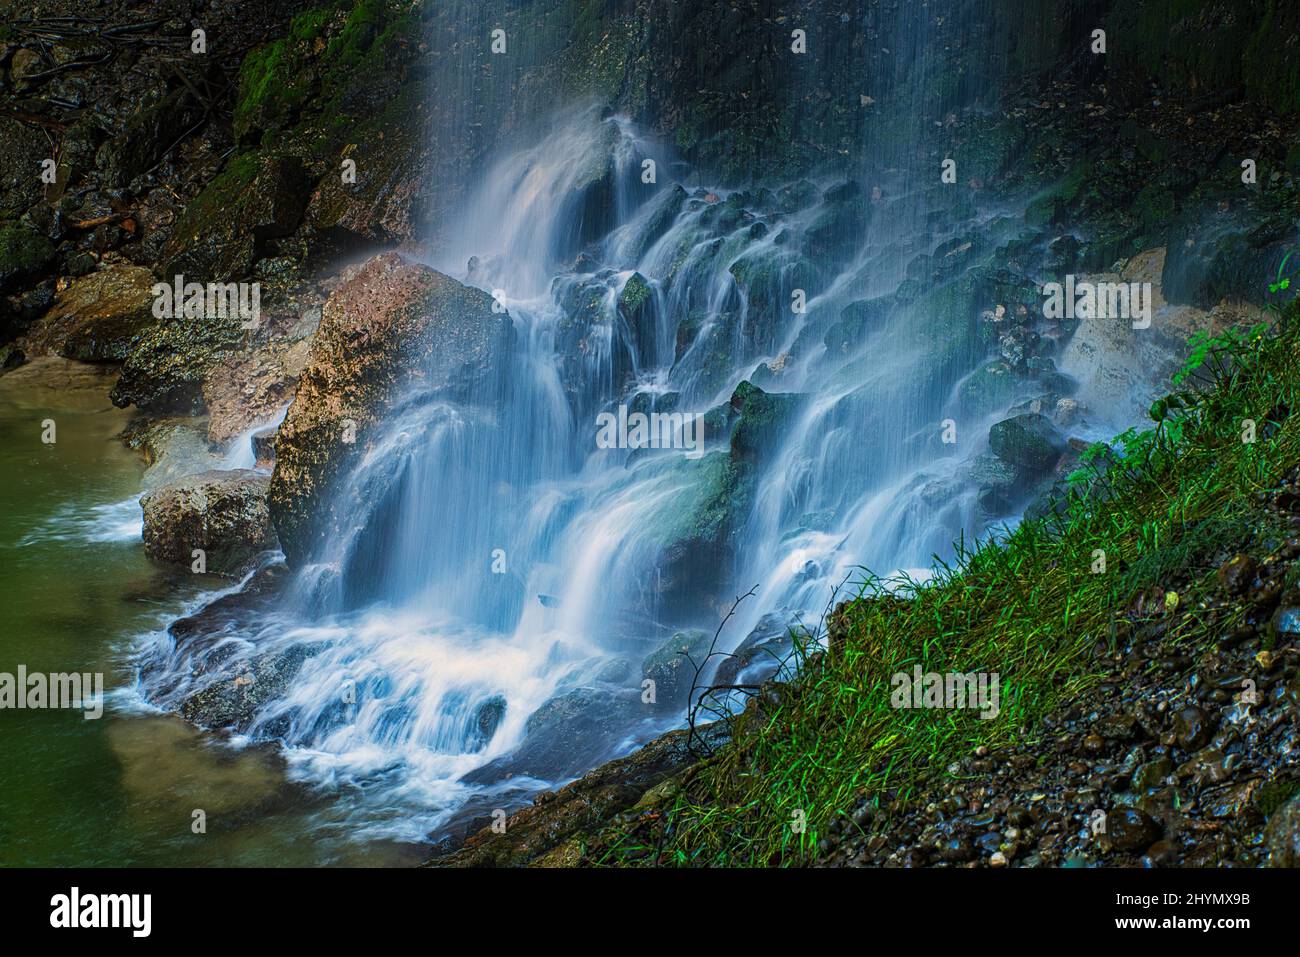 Long exposure of waterfall, Tanner Tobel, Rueti, Switzerland Stock Photo